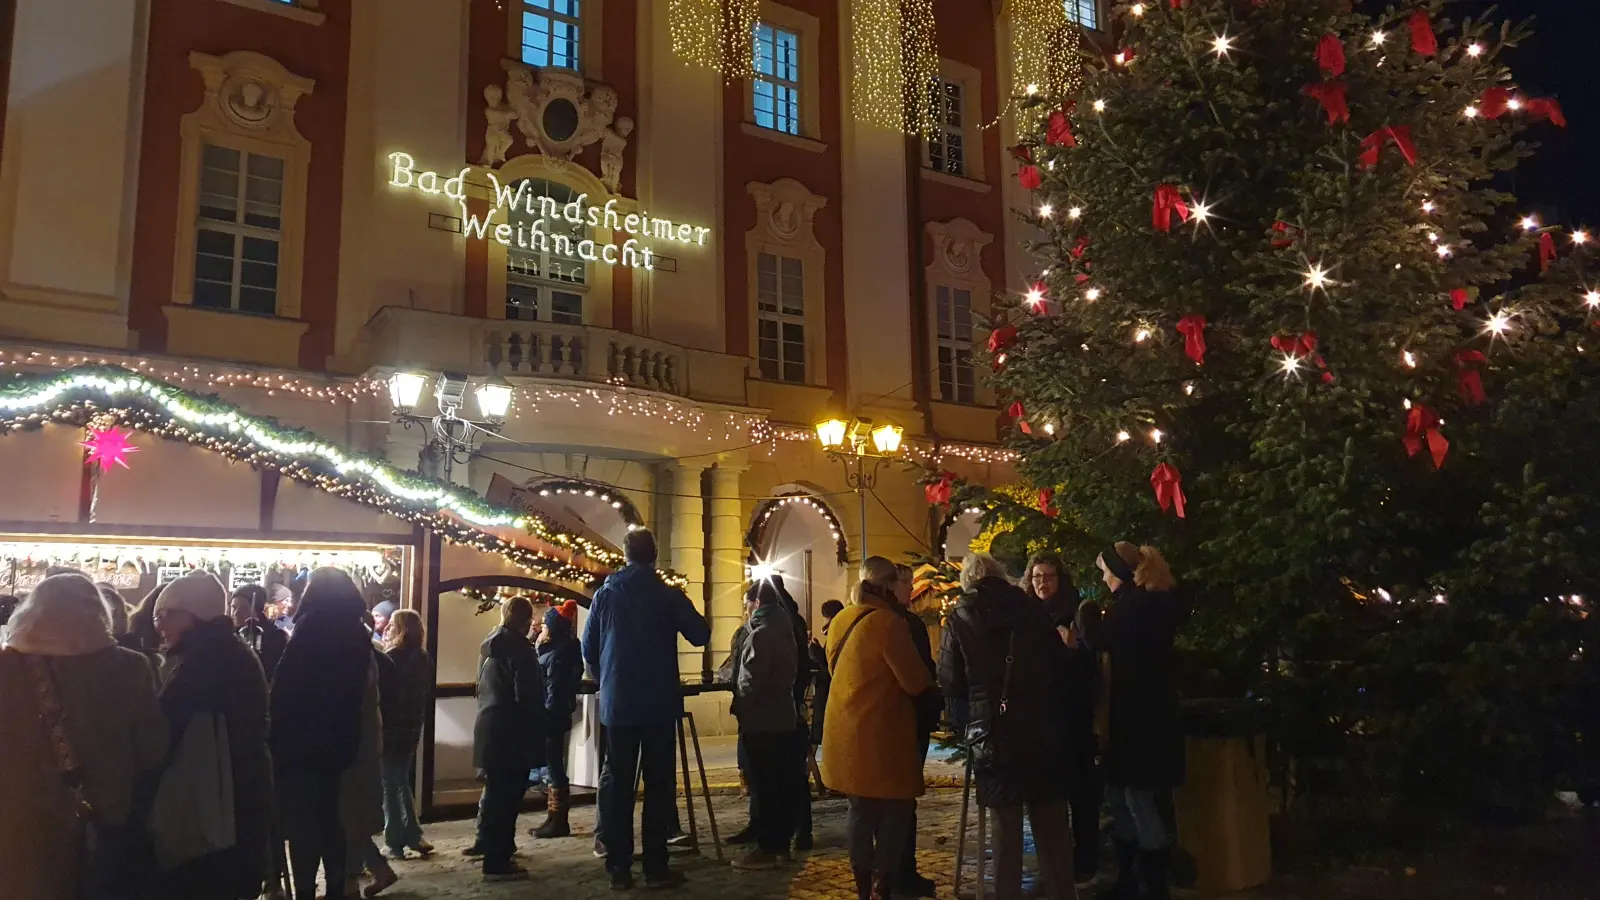 Der Reichsstädtische Weihnachtsmarkt in Bad Windsheim startet am Freitag, 1. Dezember. (Archivbild: Anna Franck)